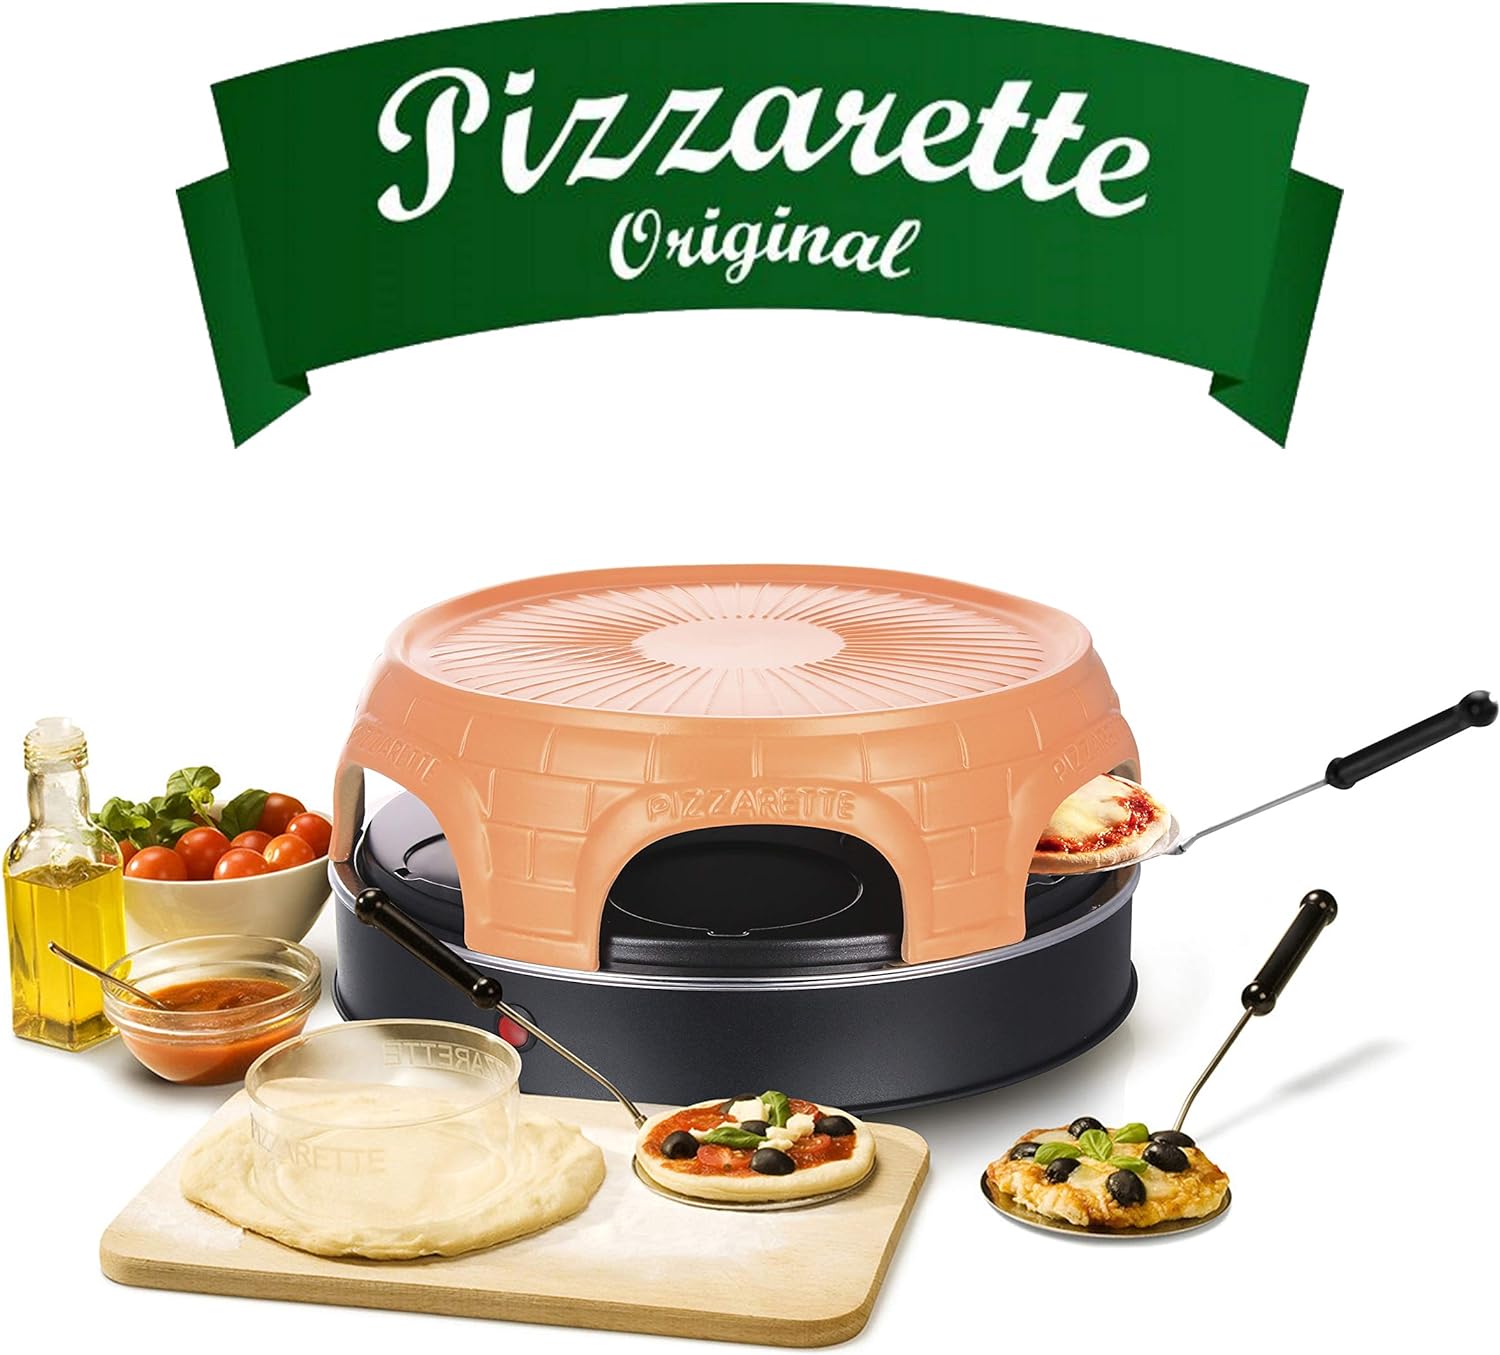 Emerio pizza oven, PIZZARETTE the original, handmade terracotta clay hood, patented design, for mini pizza, real family fun for 6 people, PO-115848